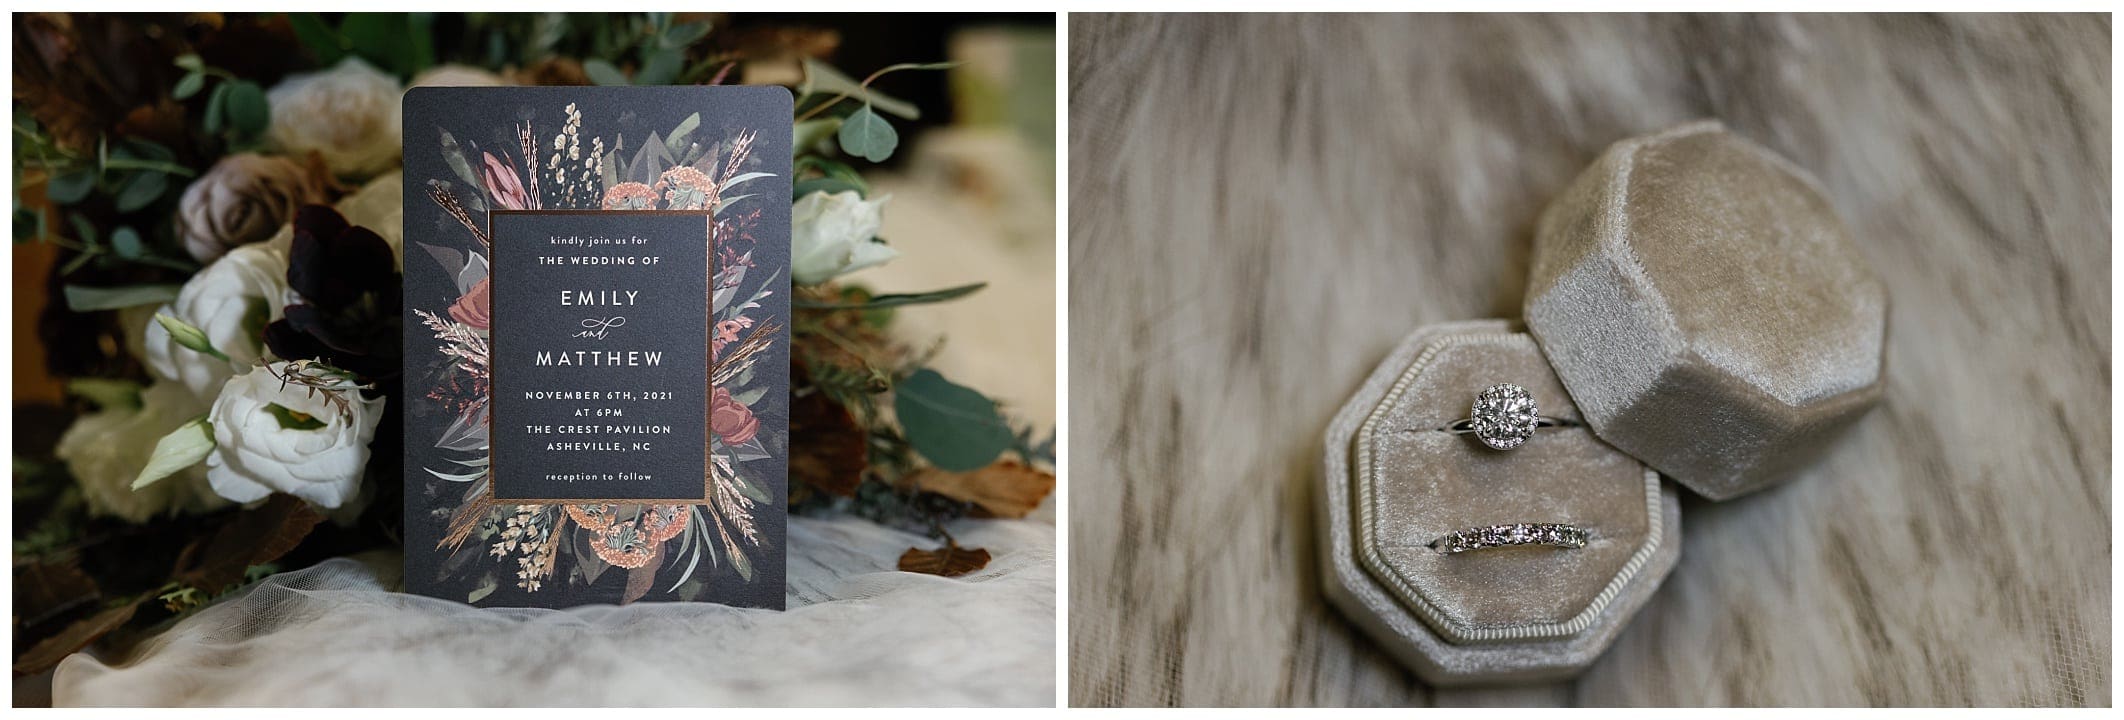 invitation and wedding ring in velvet box for a November wedding